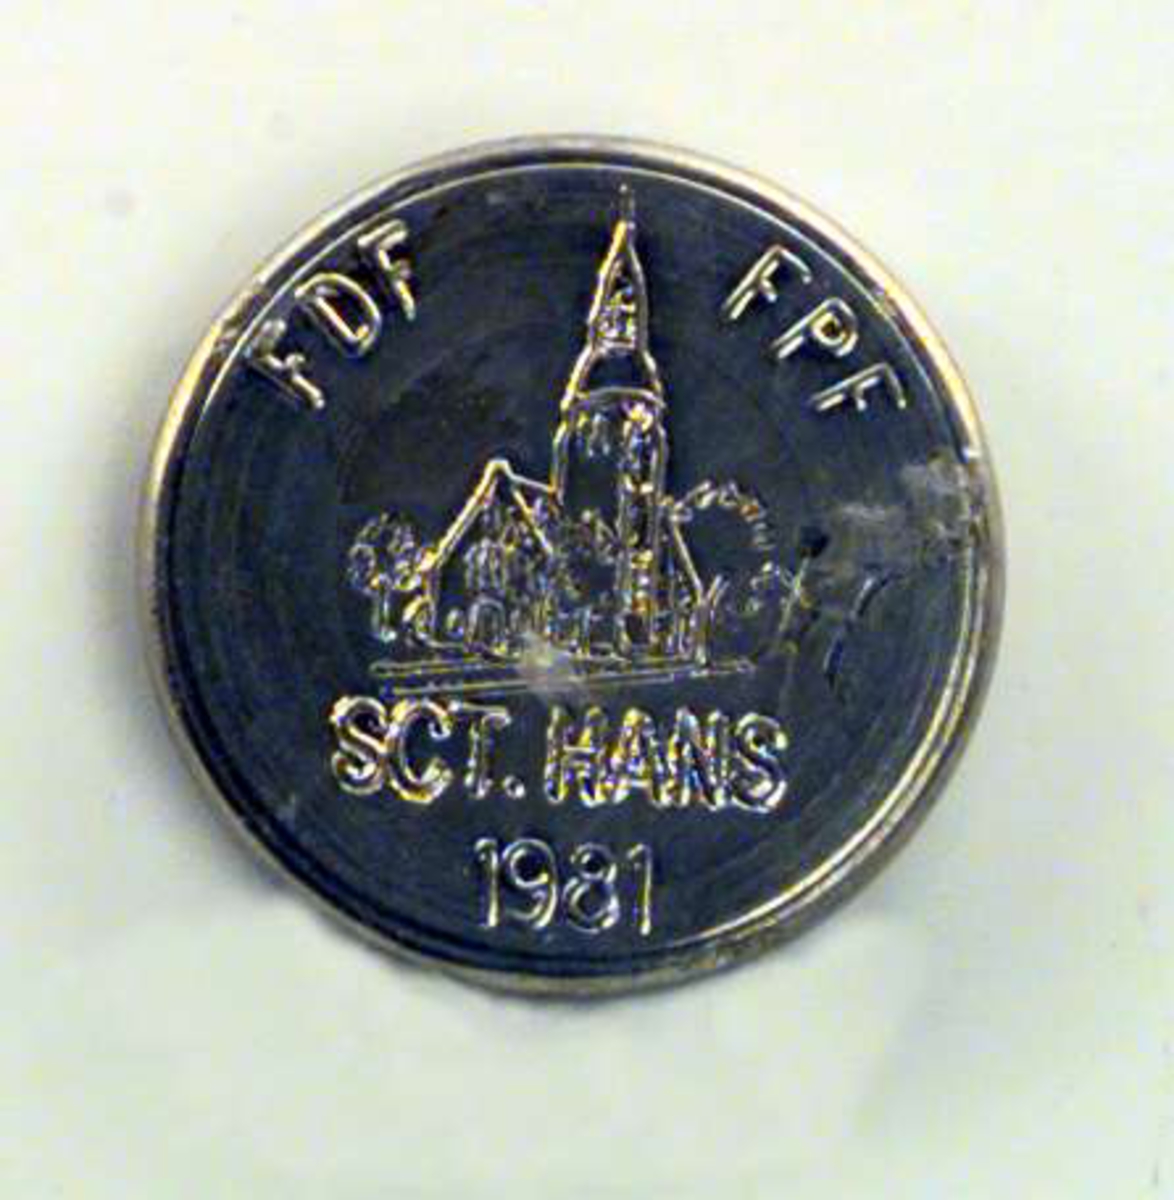 Medaljong i sølv. Motivet på medaljongen er en kirke og den har inskripsjonen SCT. HANS 1981.